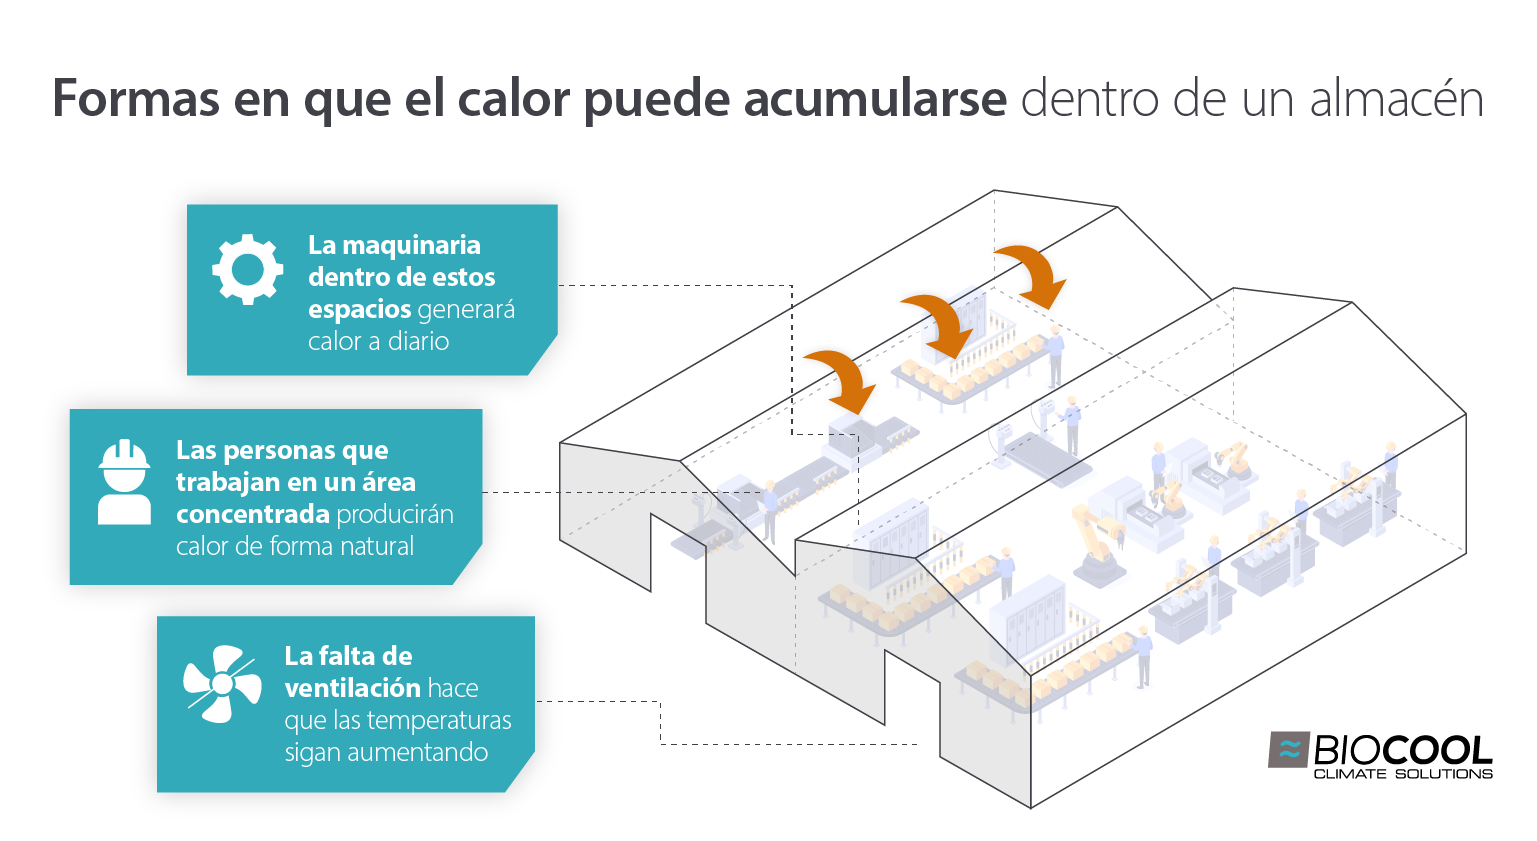 Diagrama de cómo se acumula el calor en un entorno de almacén debido a las personas, la ventilación y la maquinaria - Imagen infográfica